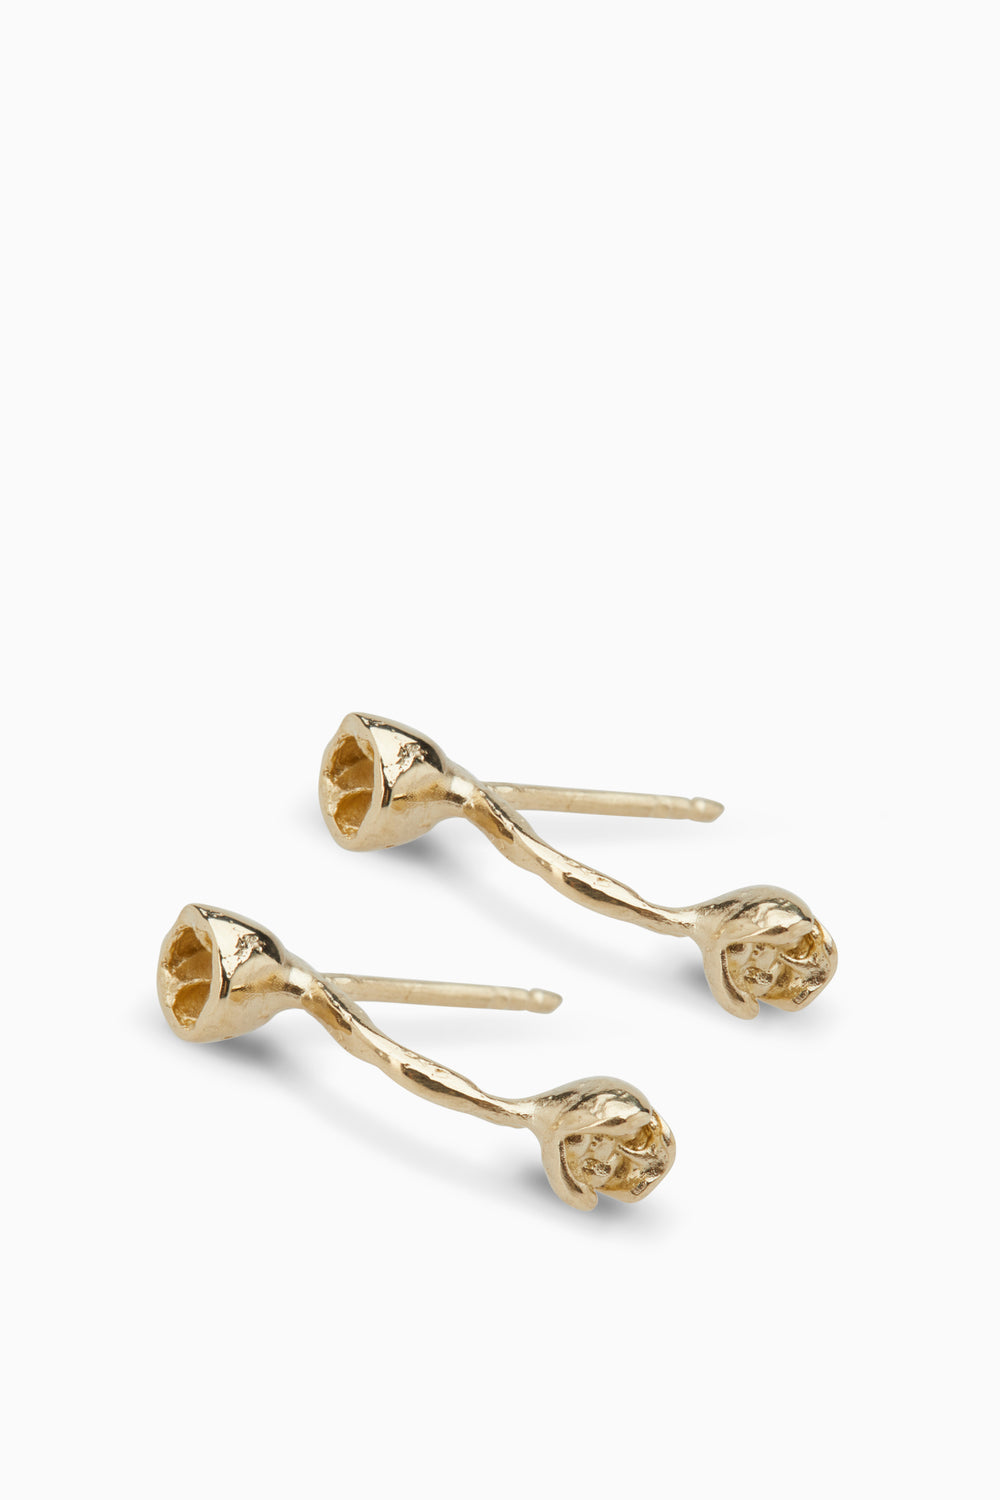 Blossom Earrings | Gold